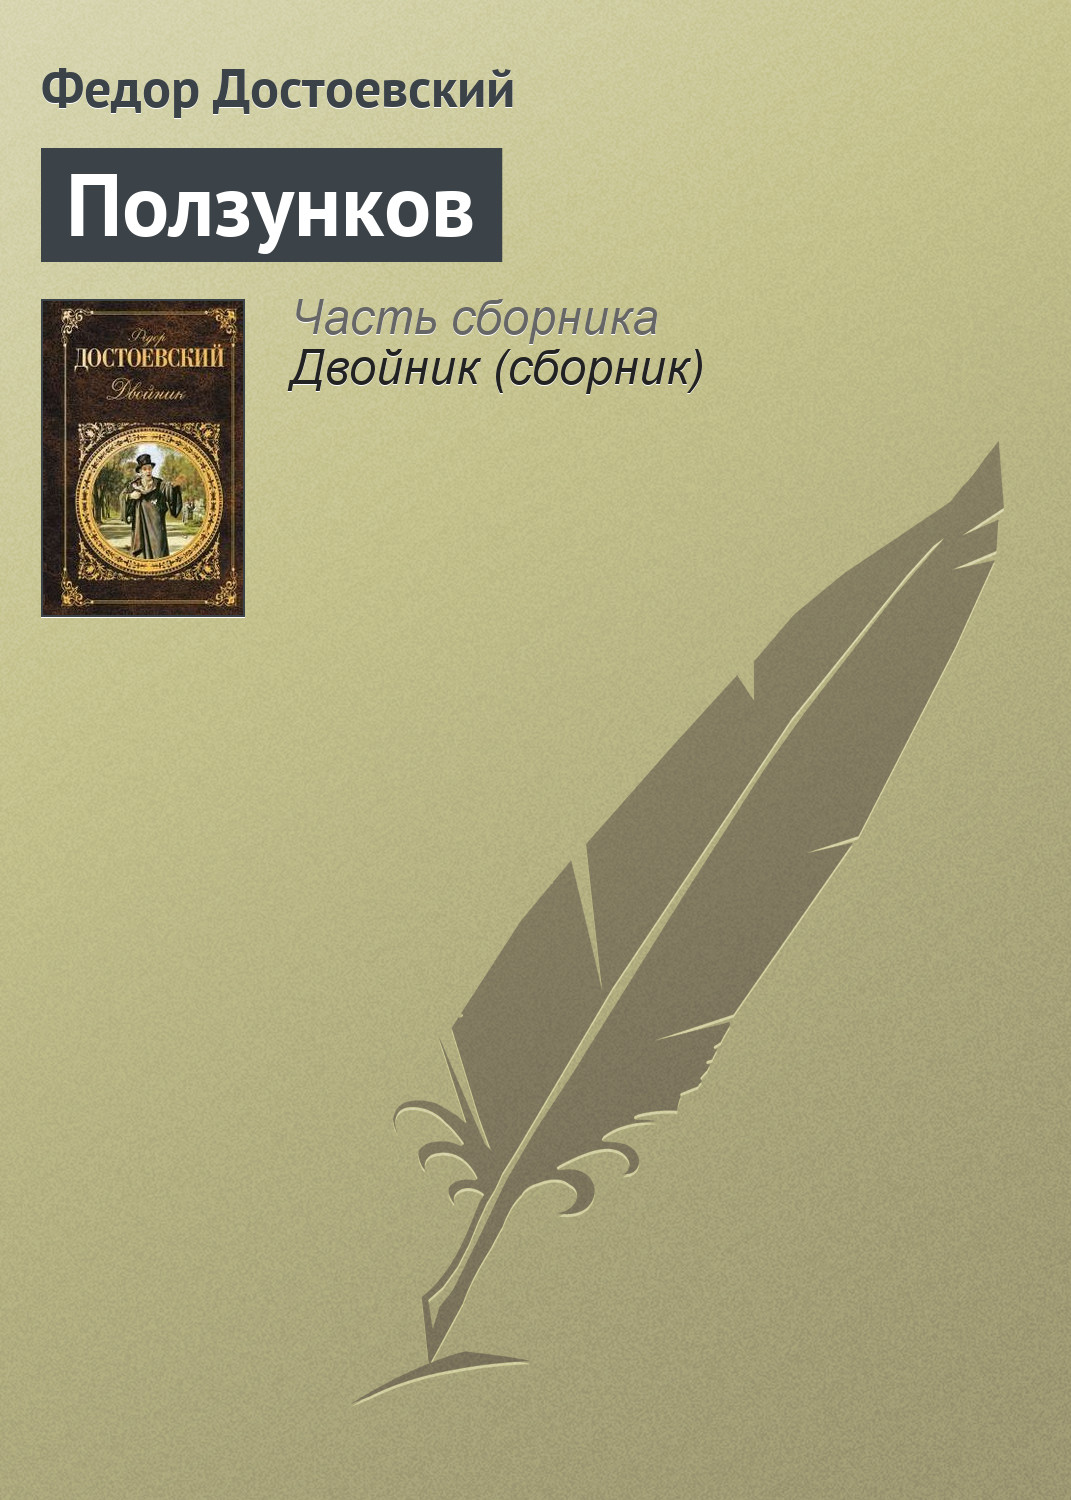 обложка электронной книги Ползунков